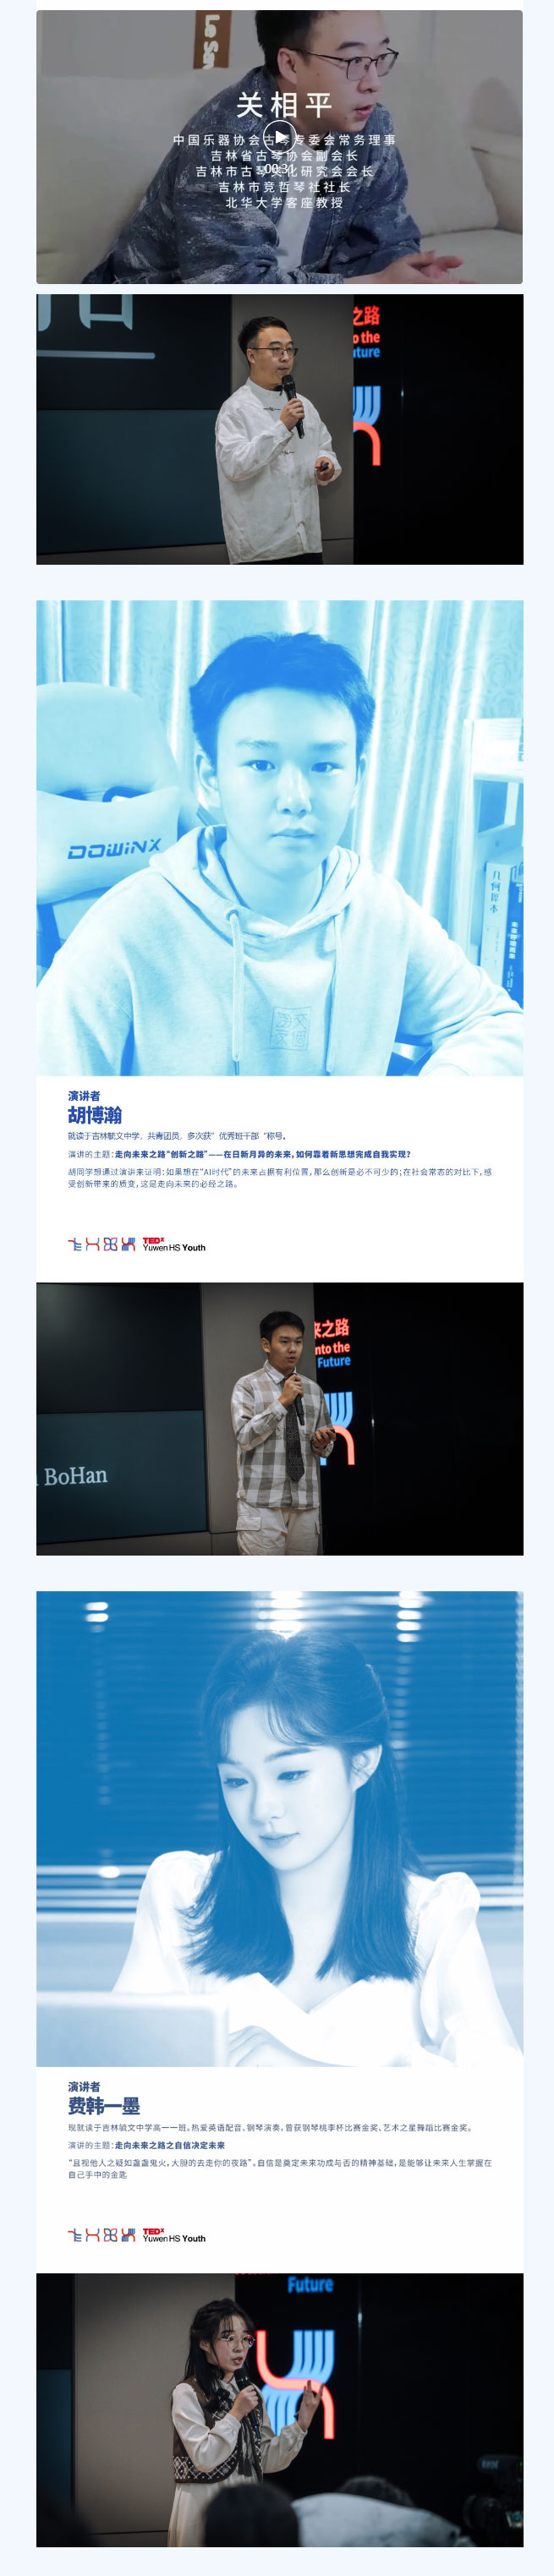 【毓见】TEDx演讲会-_-TEDx-Yuwen-HS-Youth_05.jpg